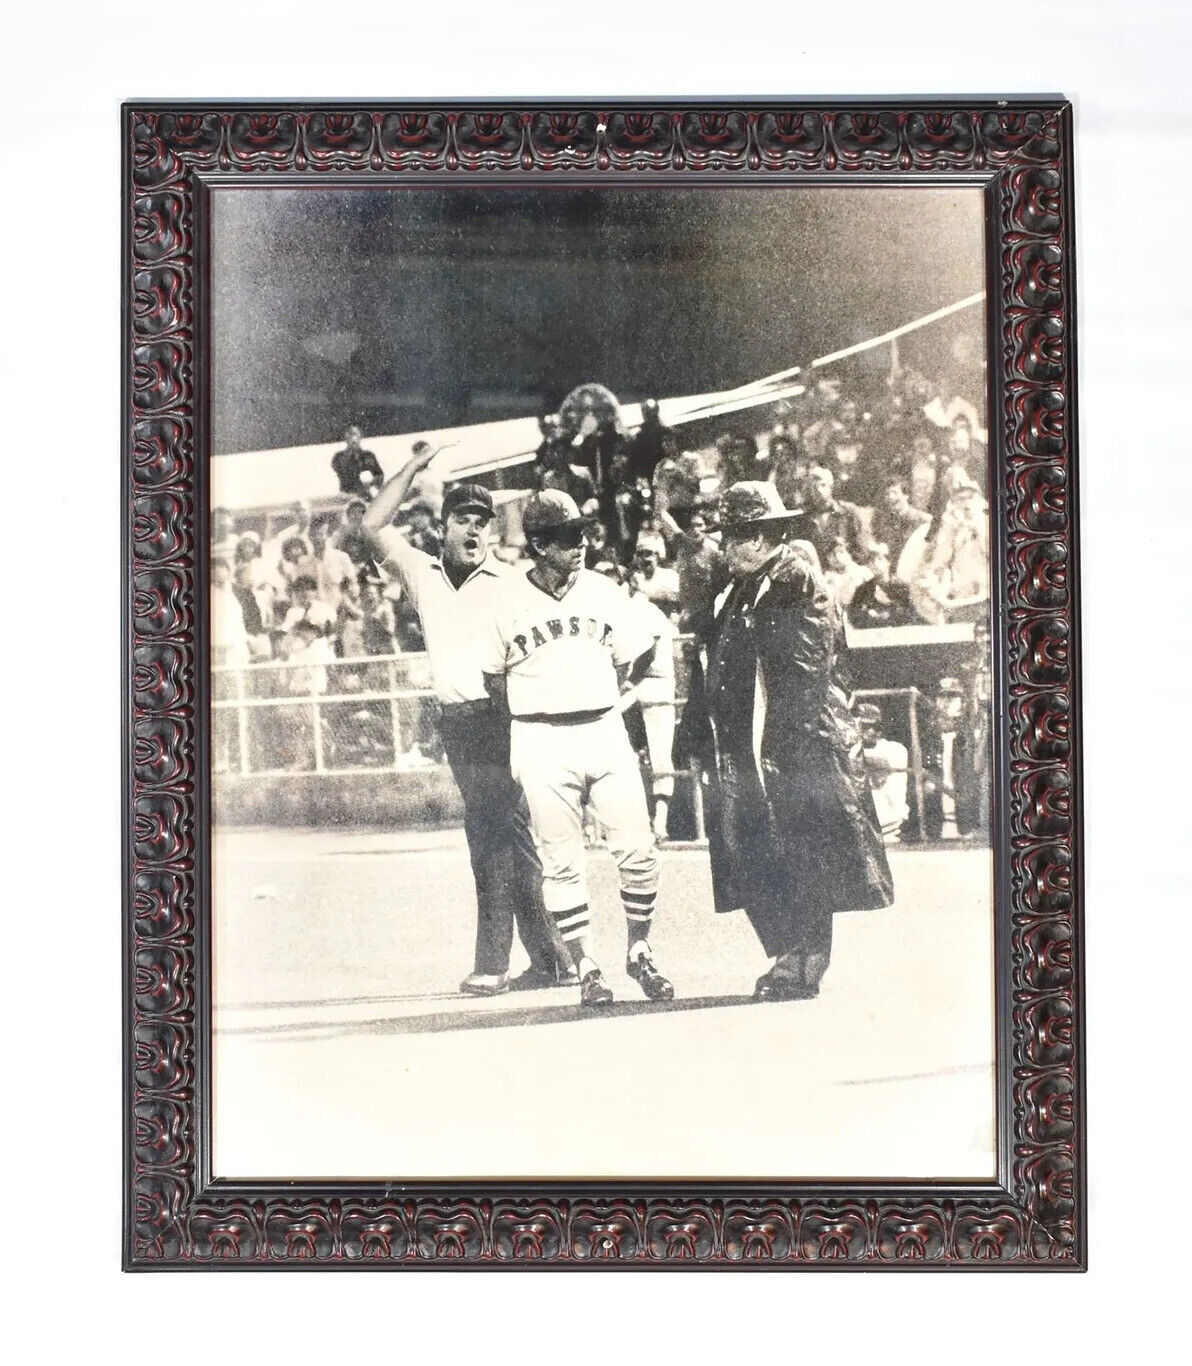 Vintage Boston Pawsox Photo Extremely Rare Framed Historical Baseball Photo